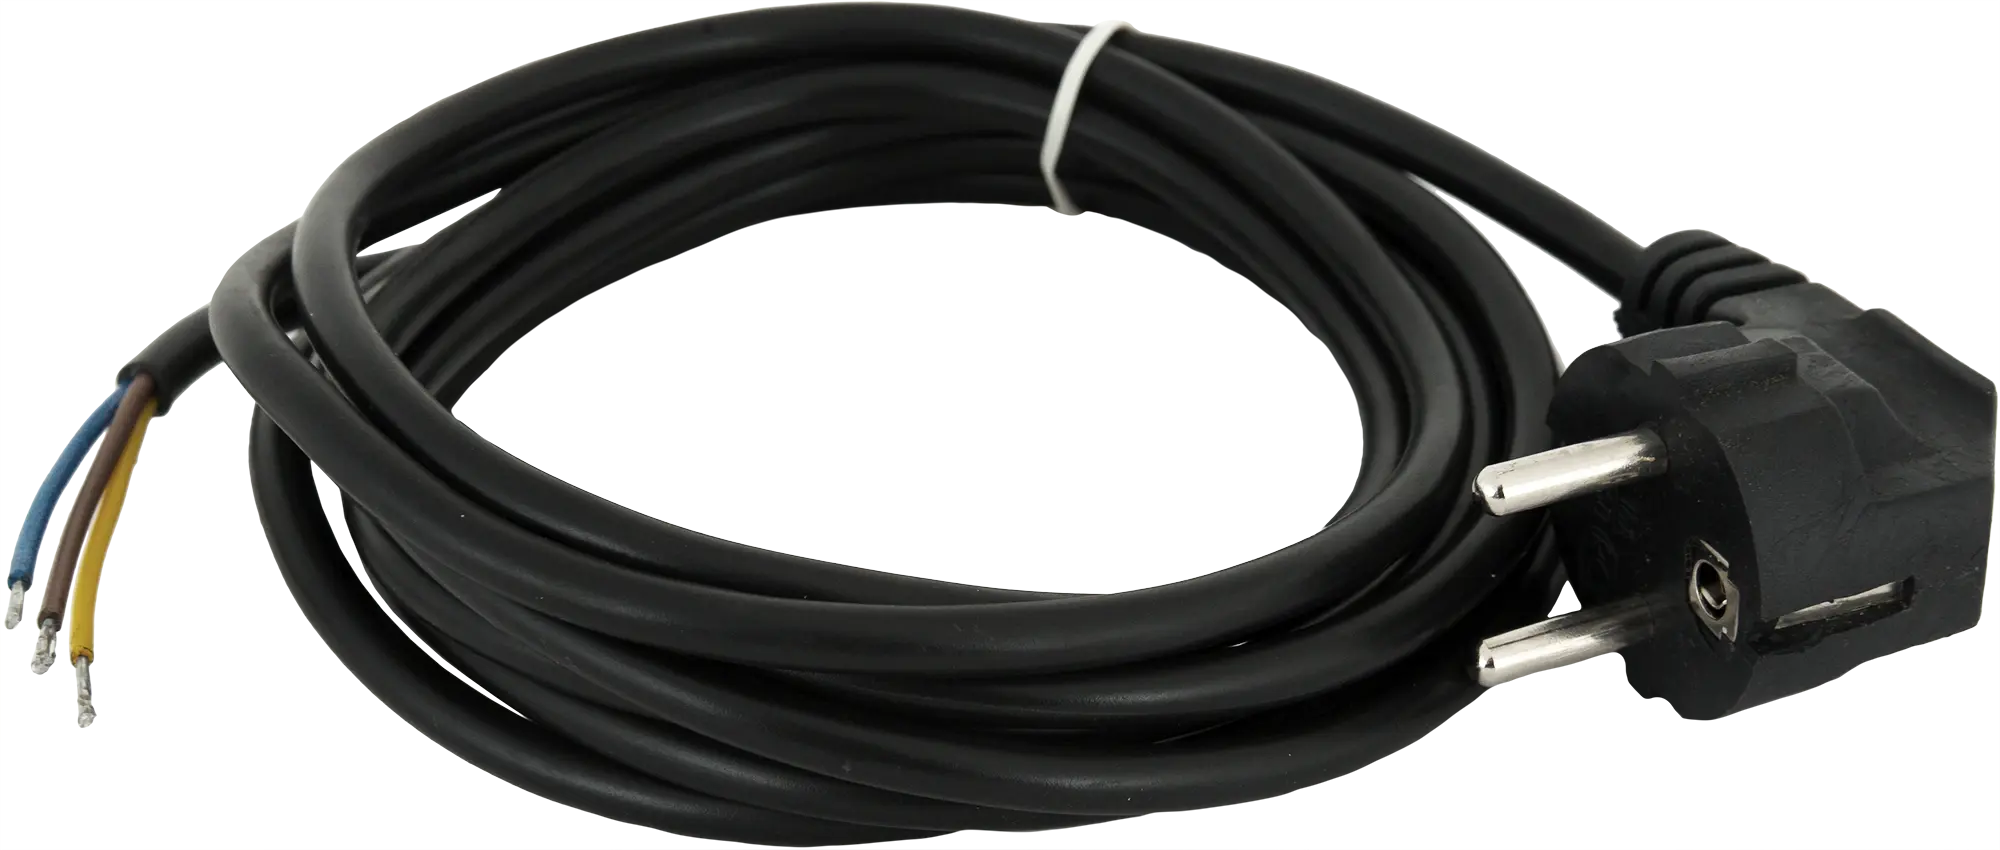 Шнур сетевой с заземлением 10 A 1.5 м цвет чёрный шнур сетевой с заземлением 16 a 1 5 м чёрный